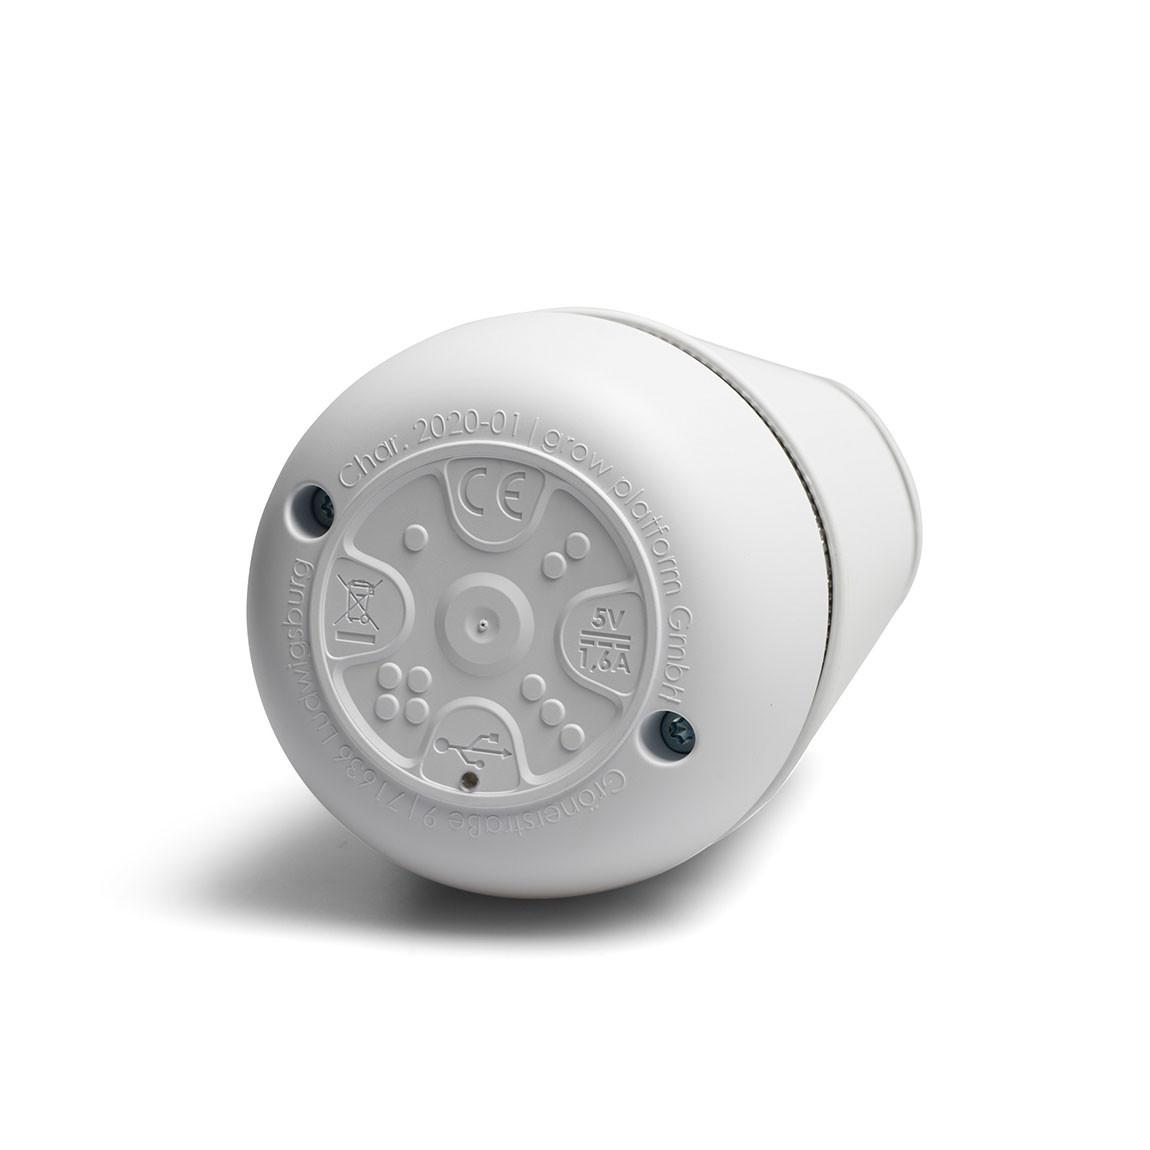 Bosch spexor - Mobiles Alarmgerät mit integrierter eSIM-Karte Unterseite